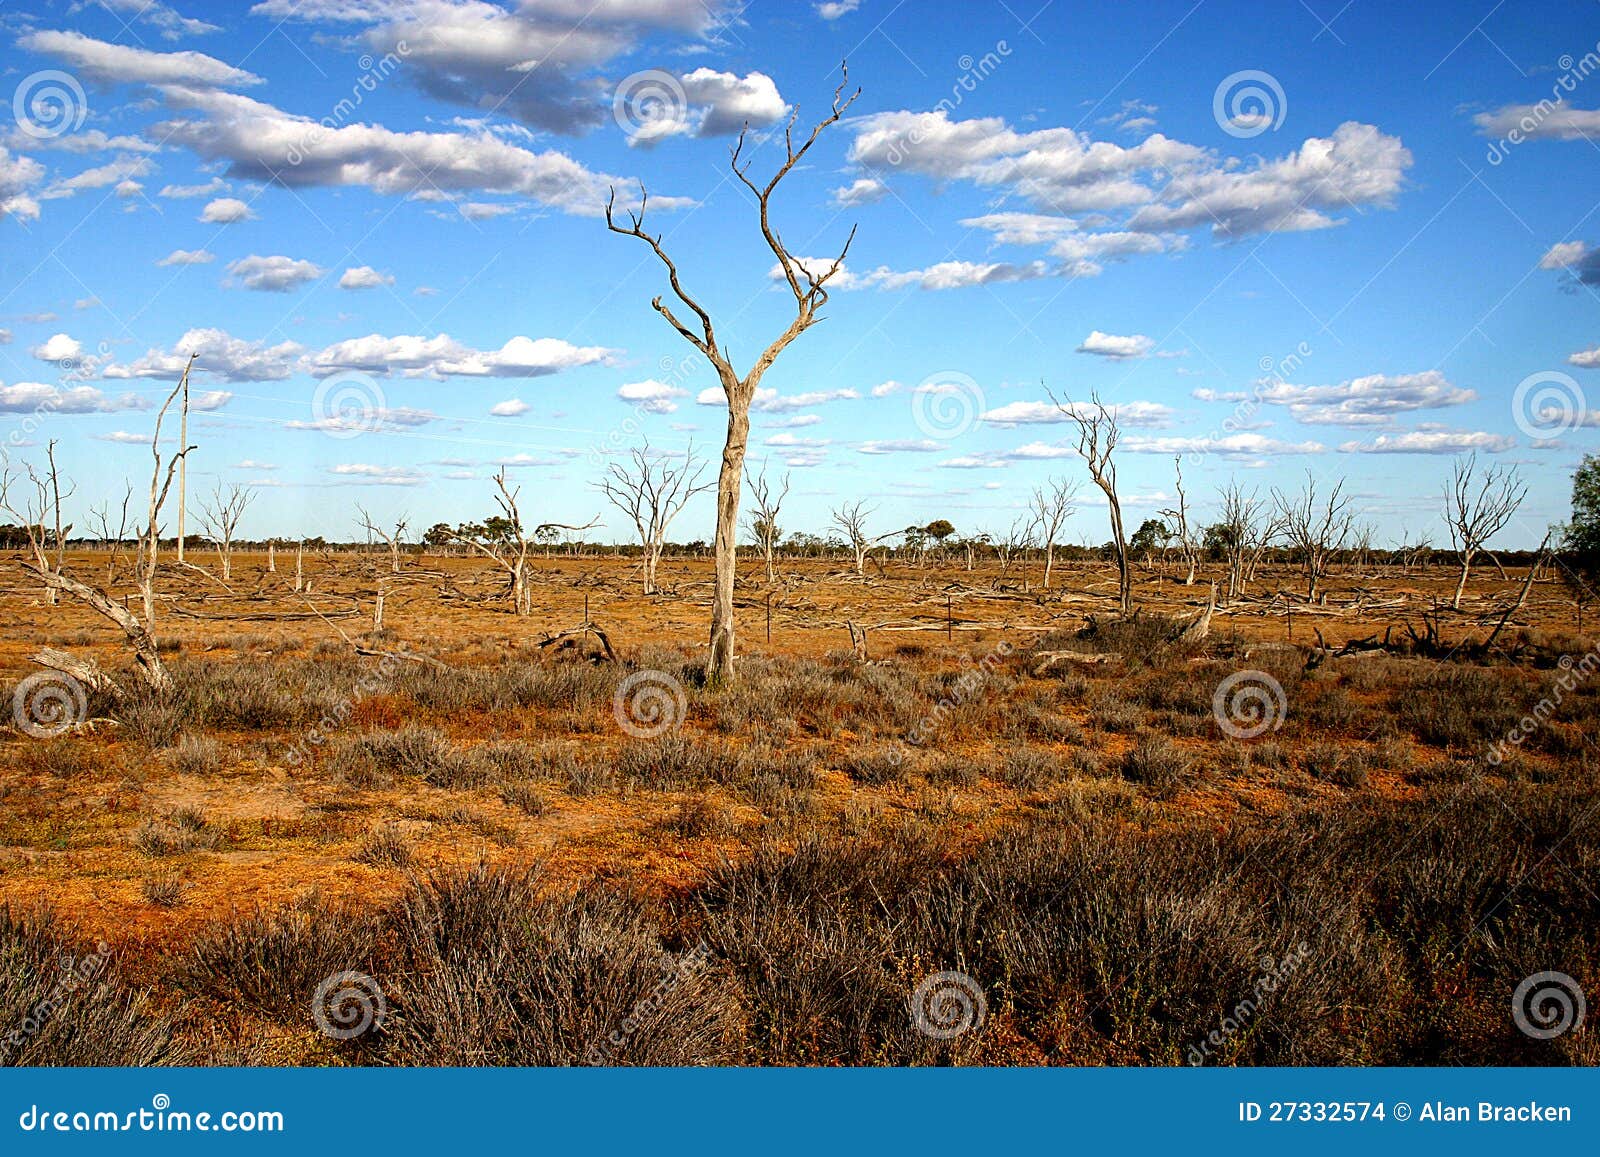 arid australian outback